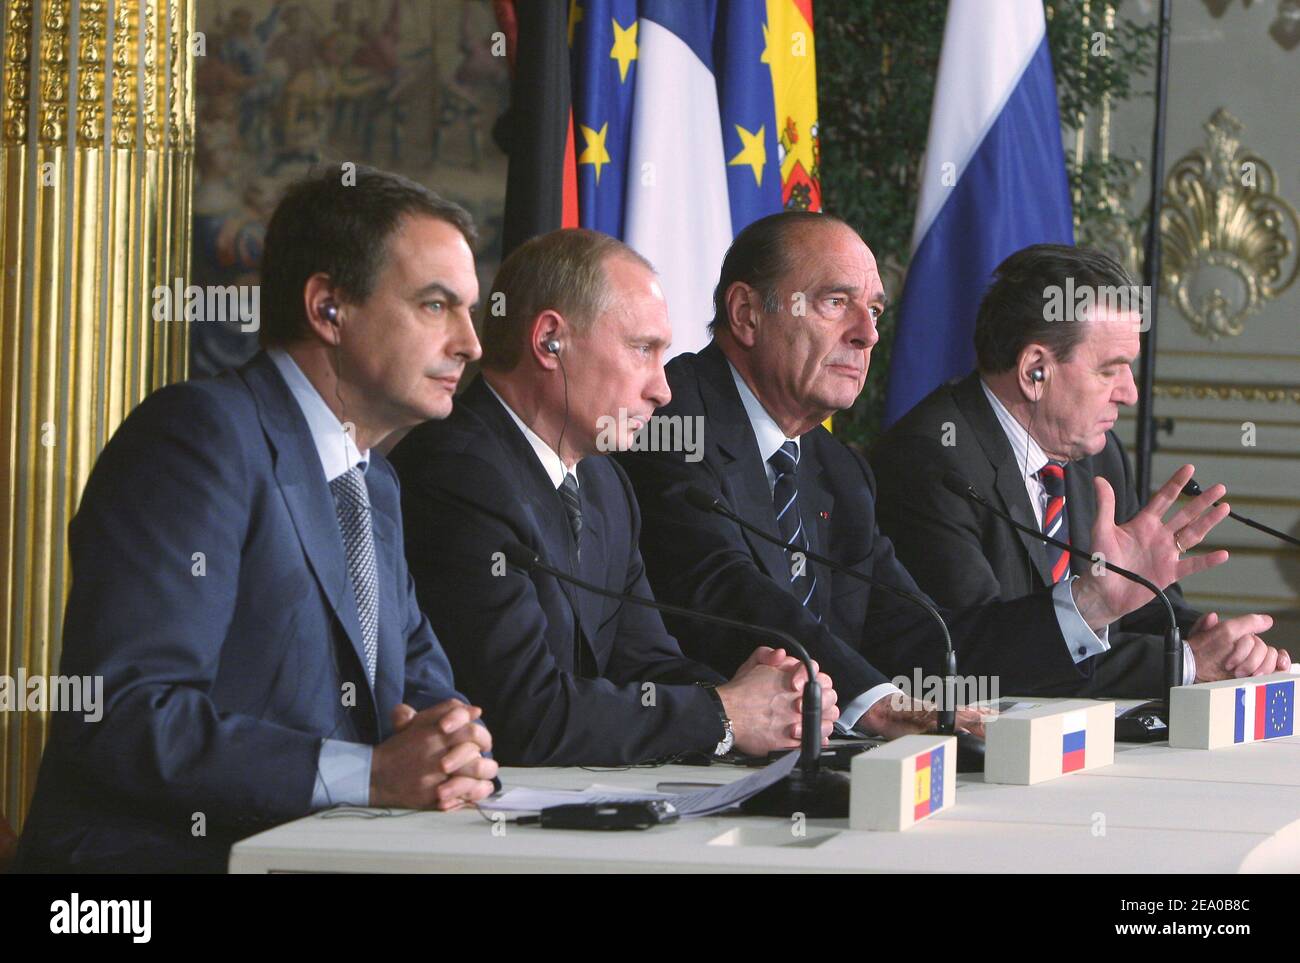 Jose Luis Zapatero, Vladimir Putin, Gerhard Schroeder und Jacques Chirac bei der gemeinsamen Pressekonferenz während des ersten vier-Wege-Gipfels im Elysee-Palast in Paris, Frankreich, am 18. März 2005.Foto: Mousse/ABACA Stockfoto